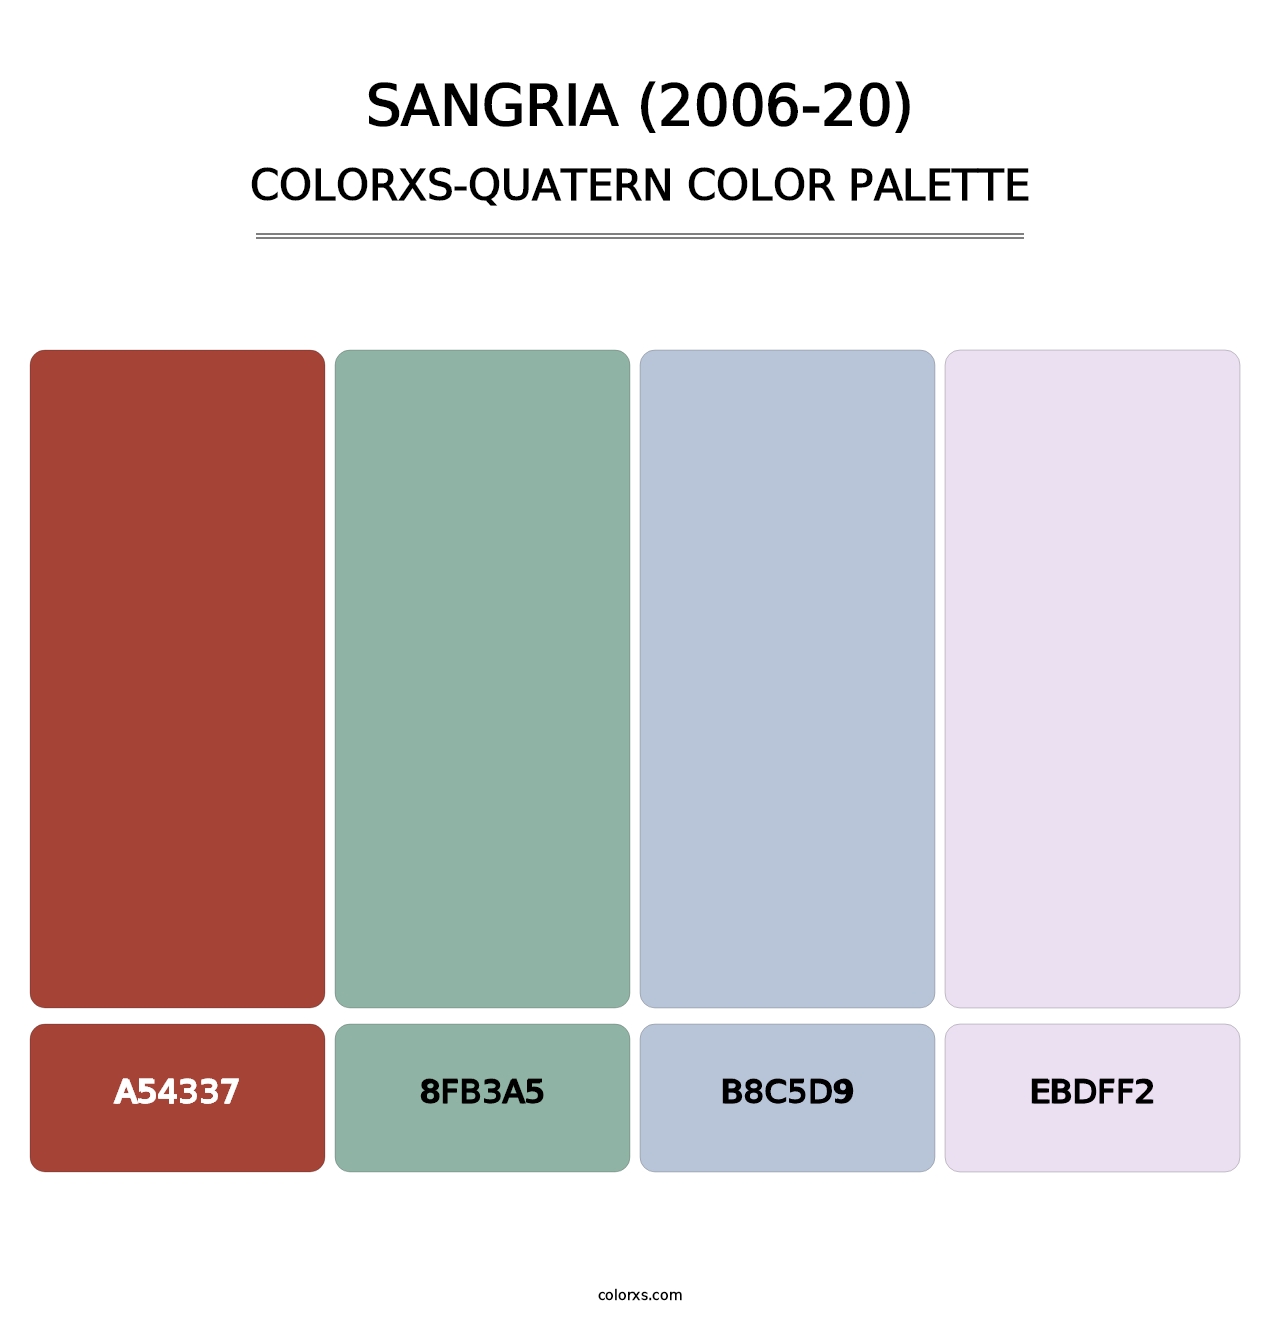 Sangria (2006-20) - Colorxs Quatern Palette